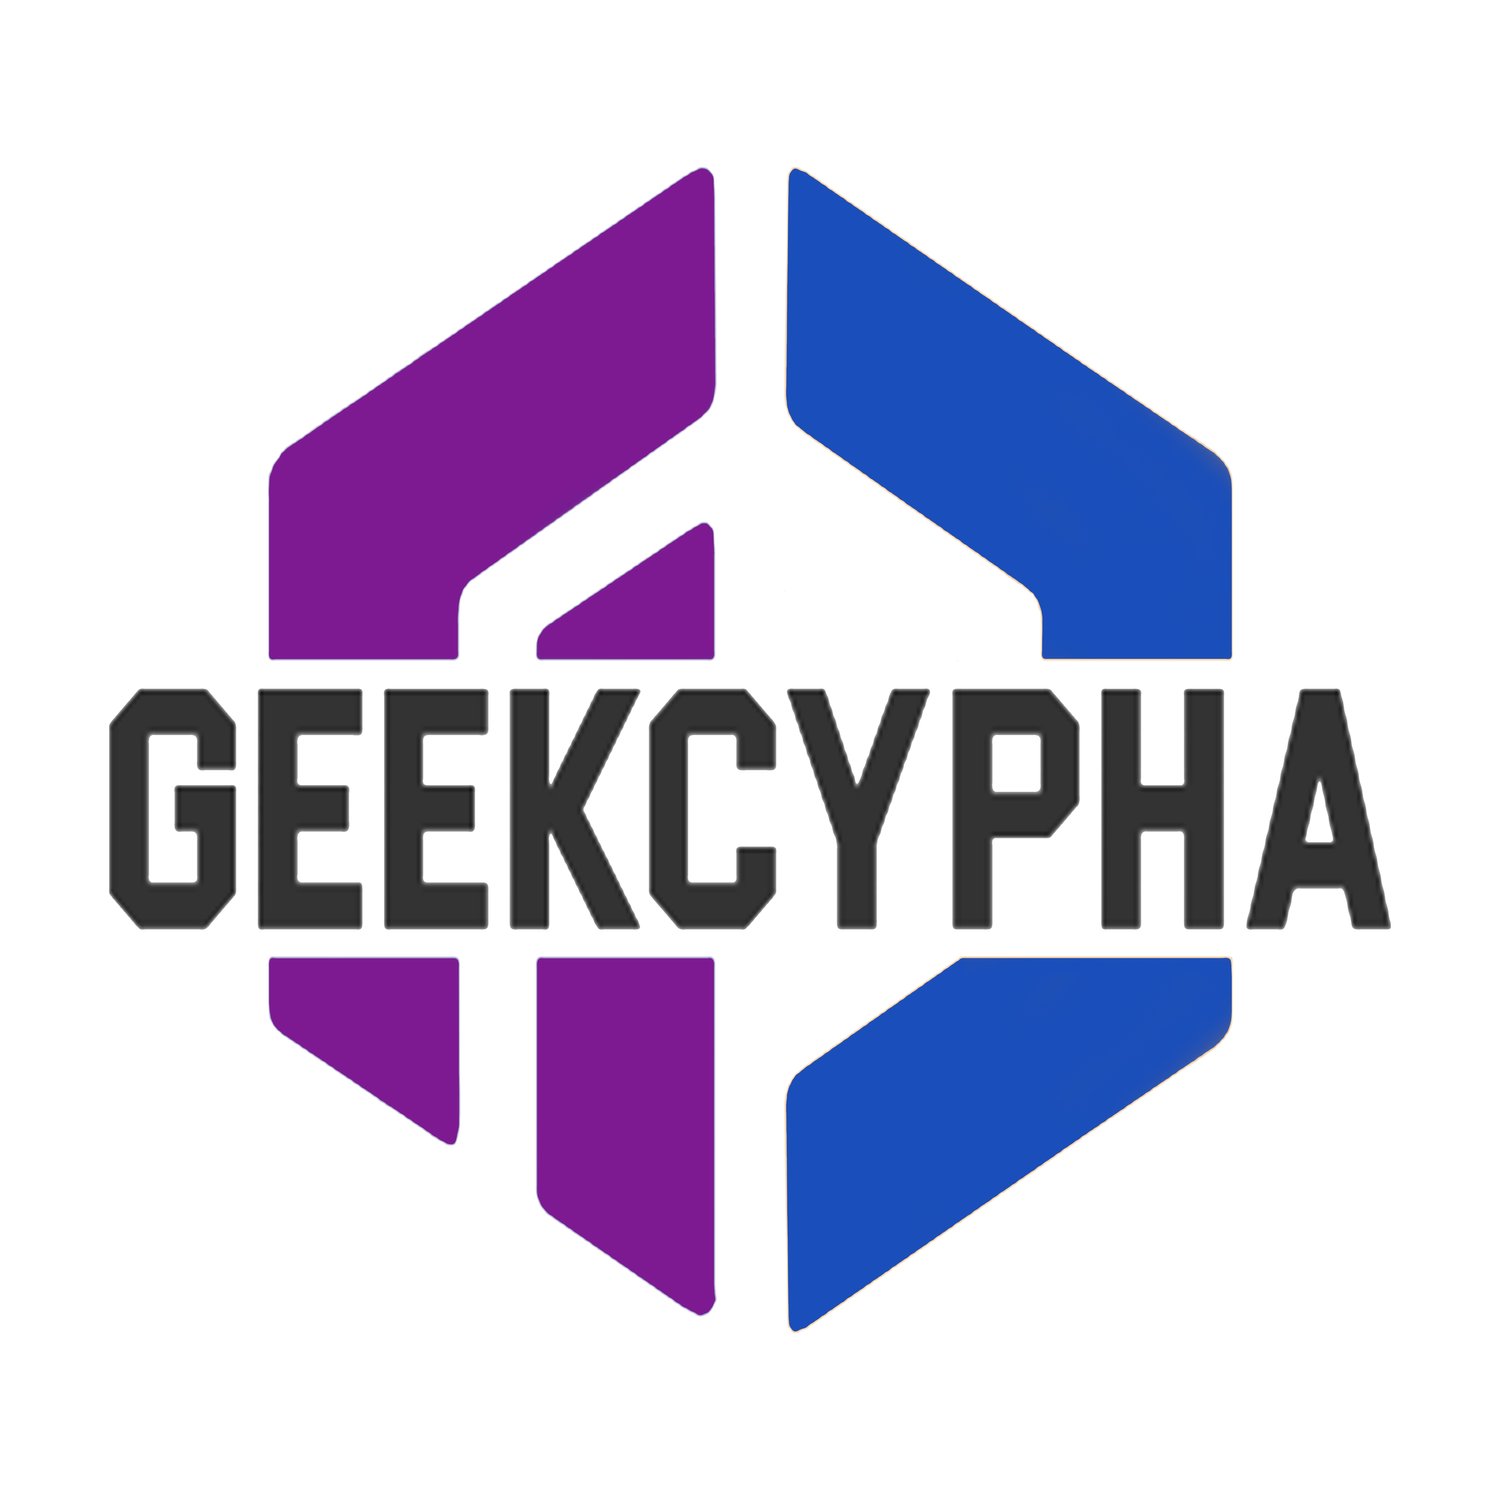 GeekCypha